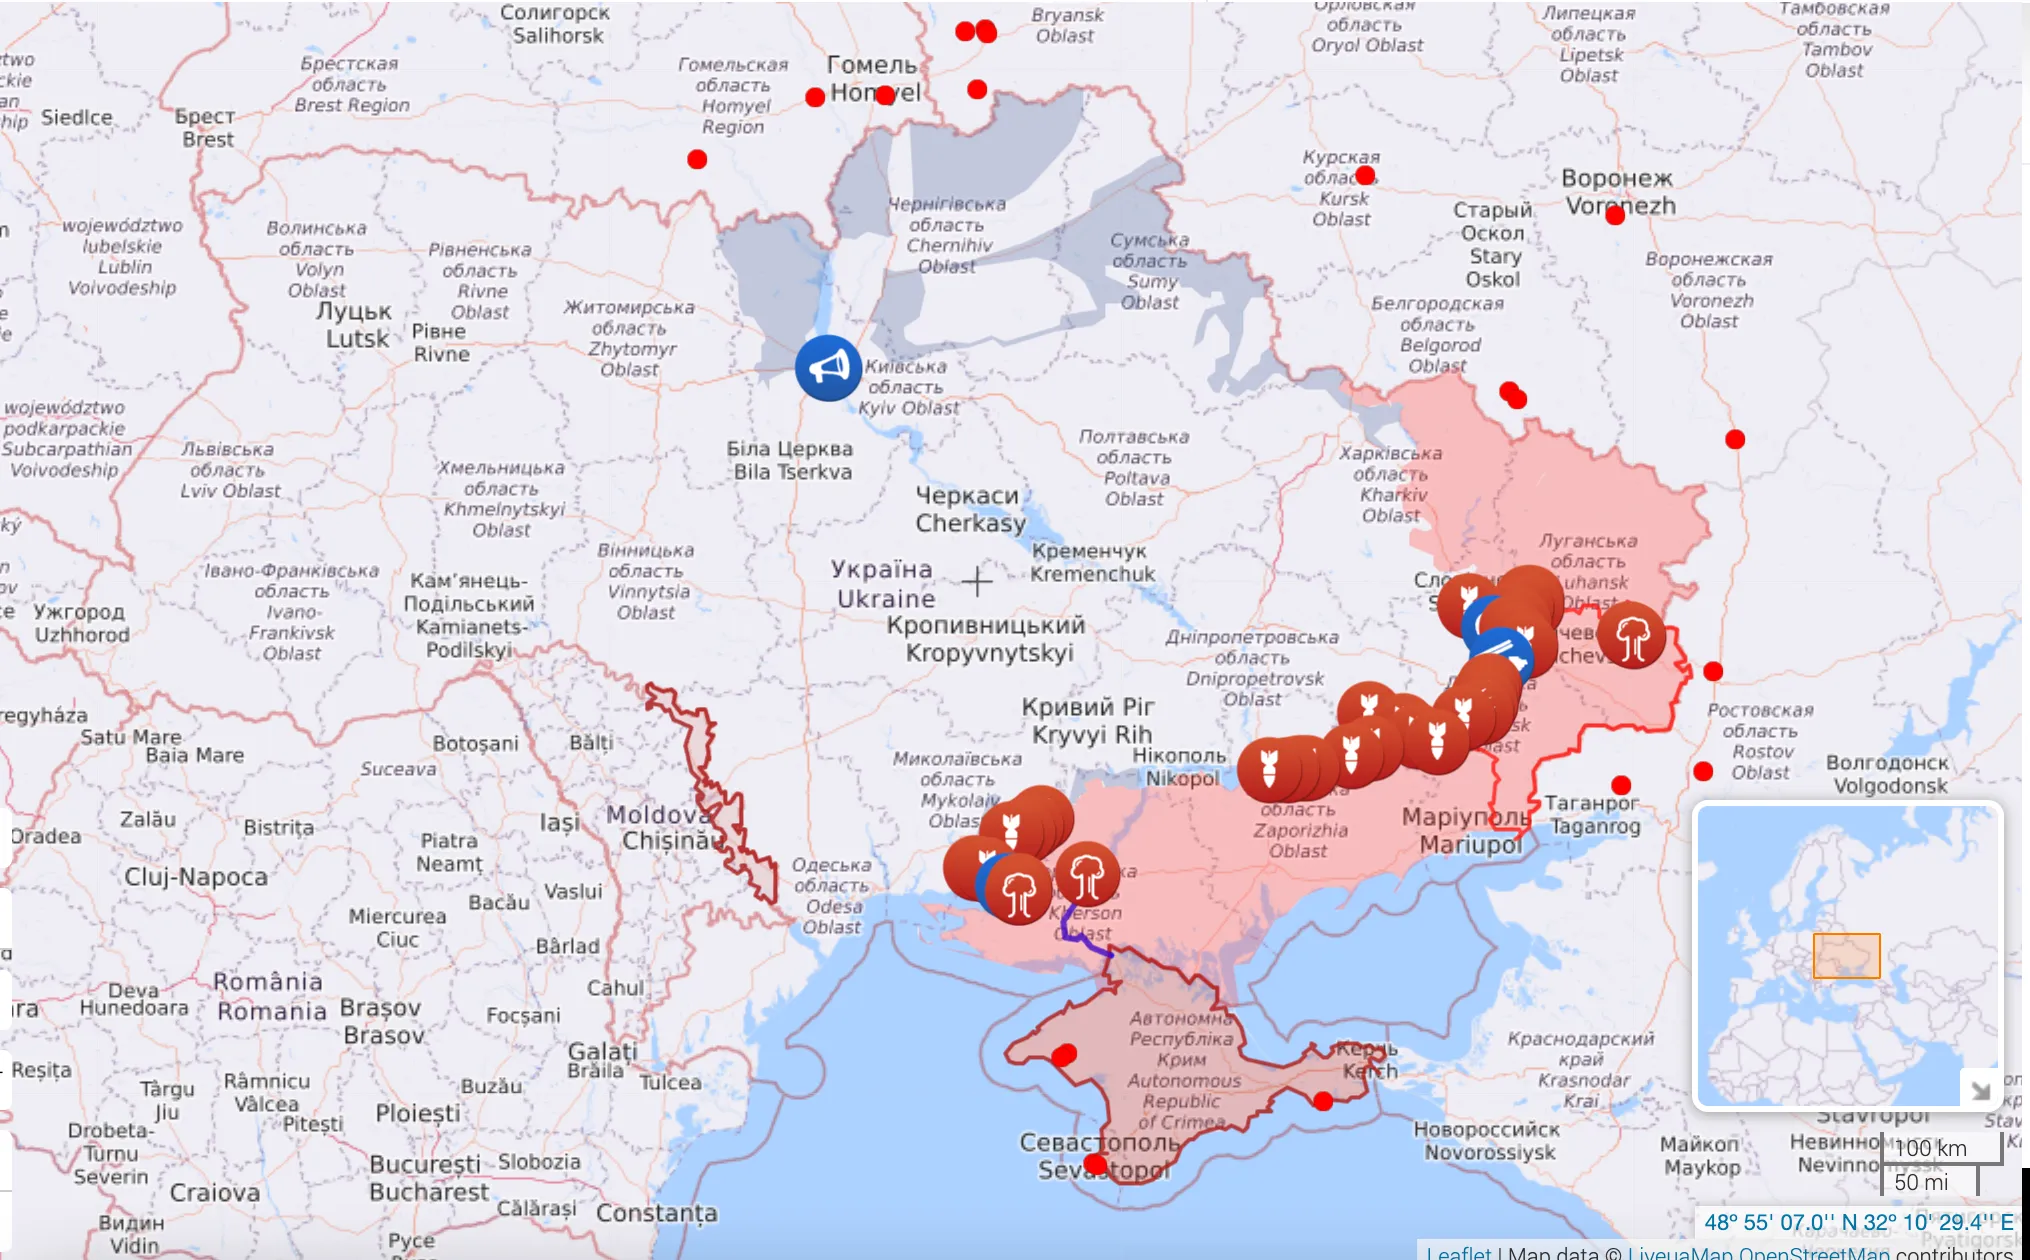 Карта боевых действий в Украине по состоянию на 11 июля